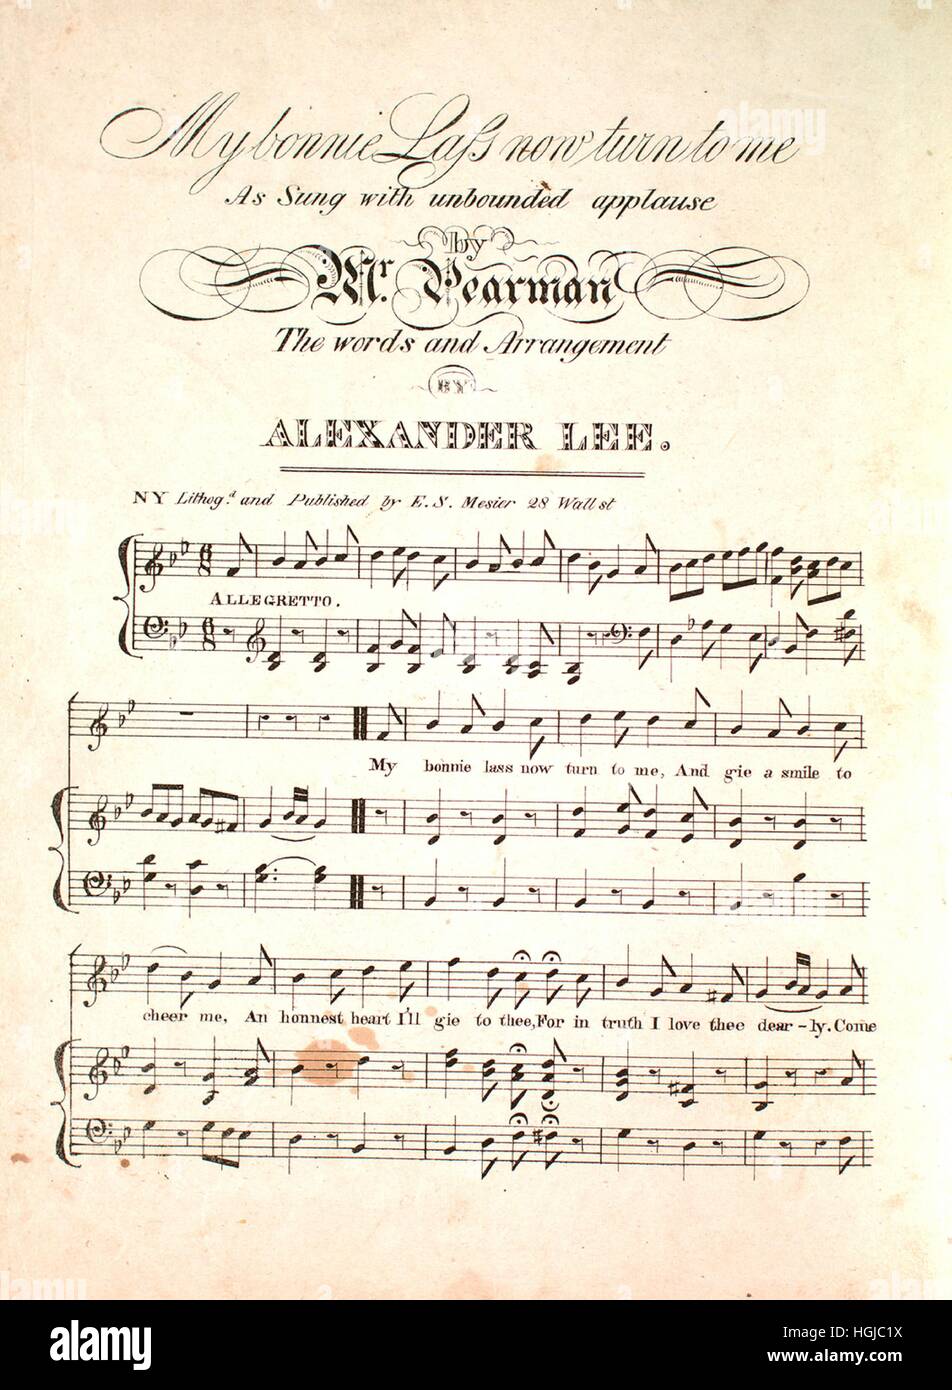 Foglio di musica immagine di copertina del brano 'My Bonnie Lass Ora a me',  con paternitã originale lettura delle note " le parole e la disposizione di  Alexander Lee", Stati Uniti, 1900.